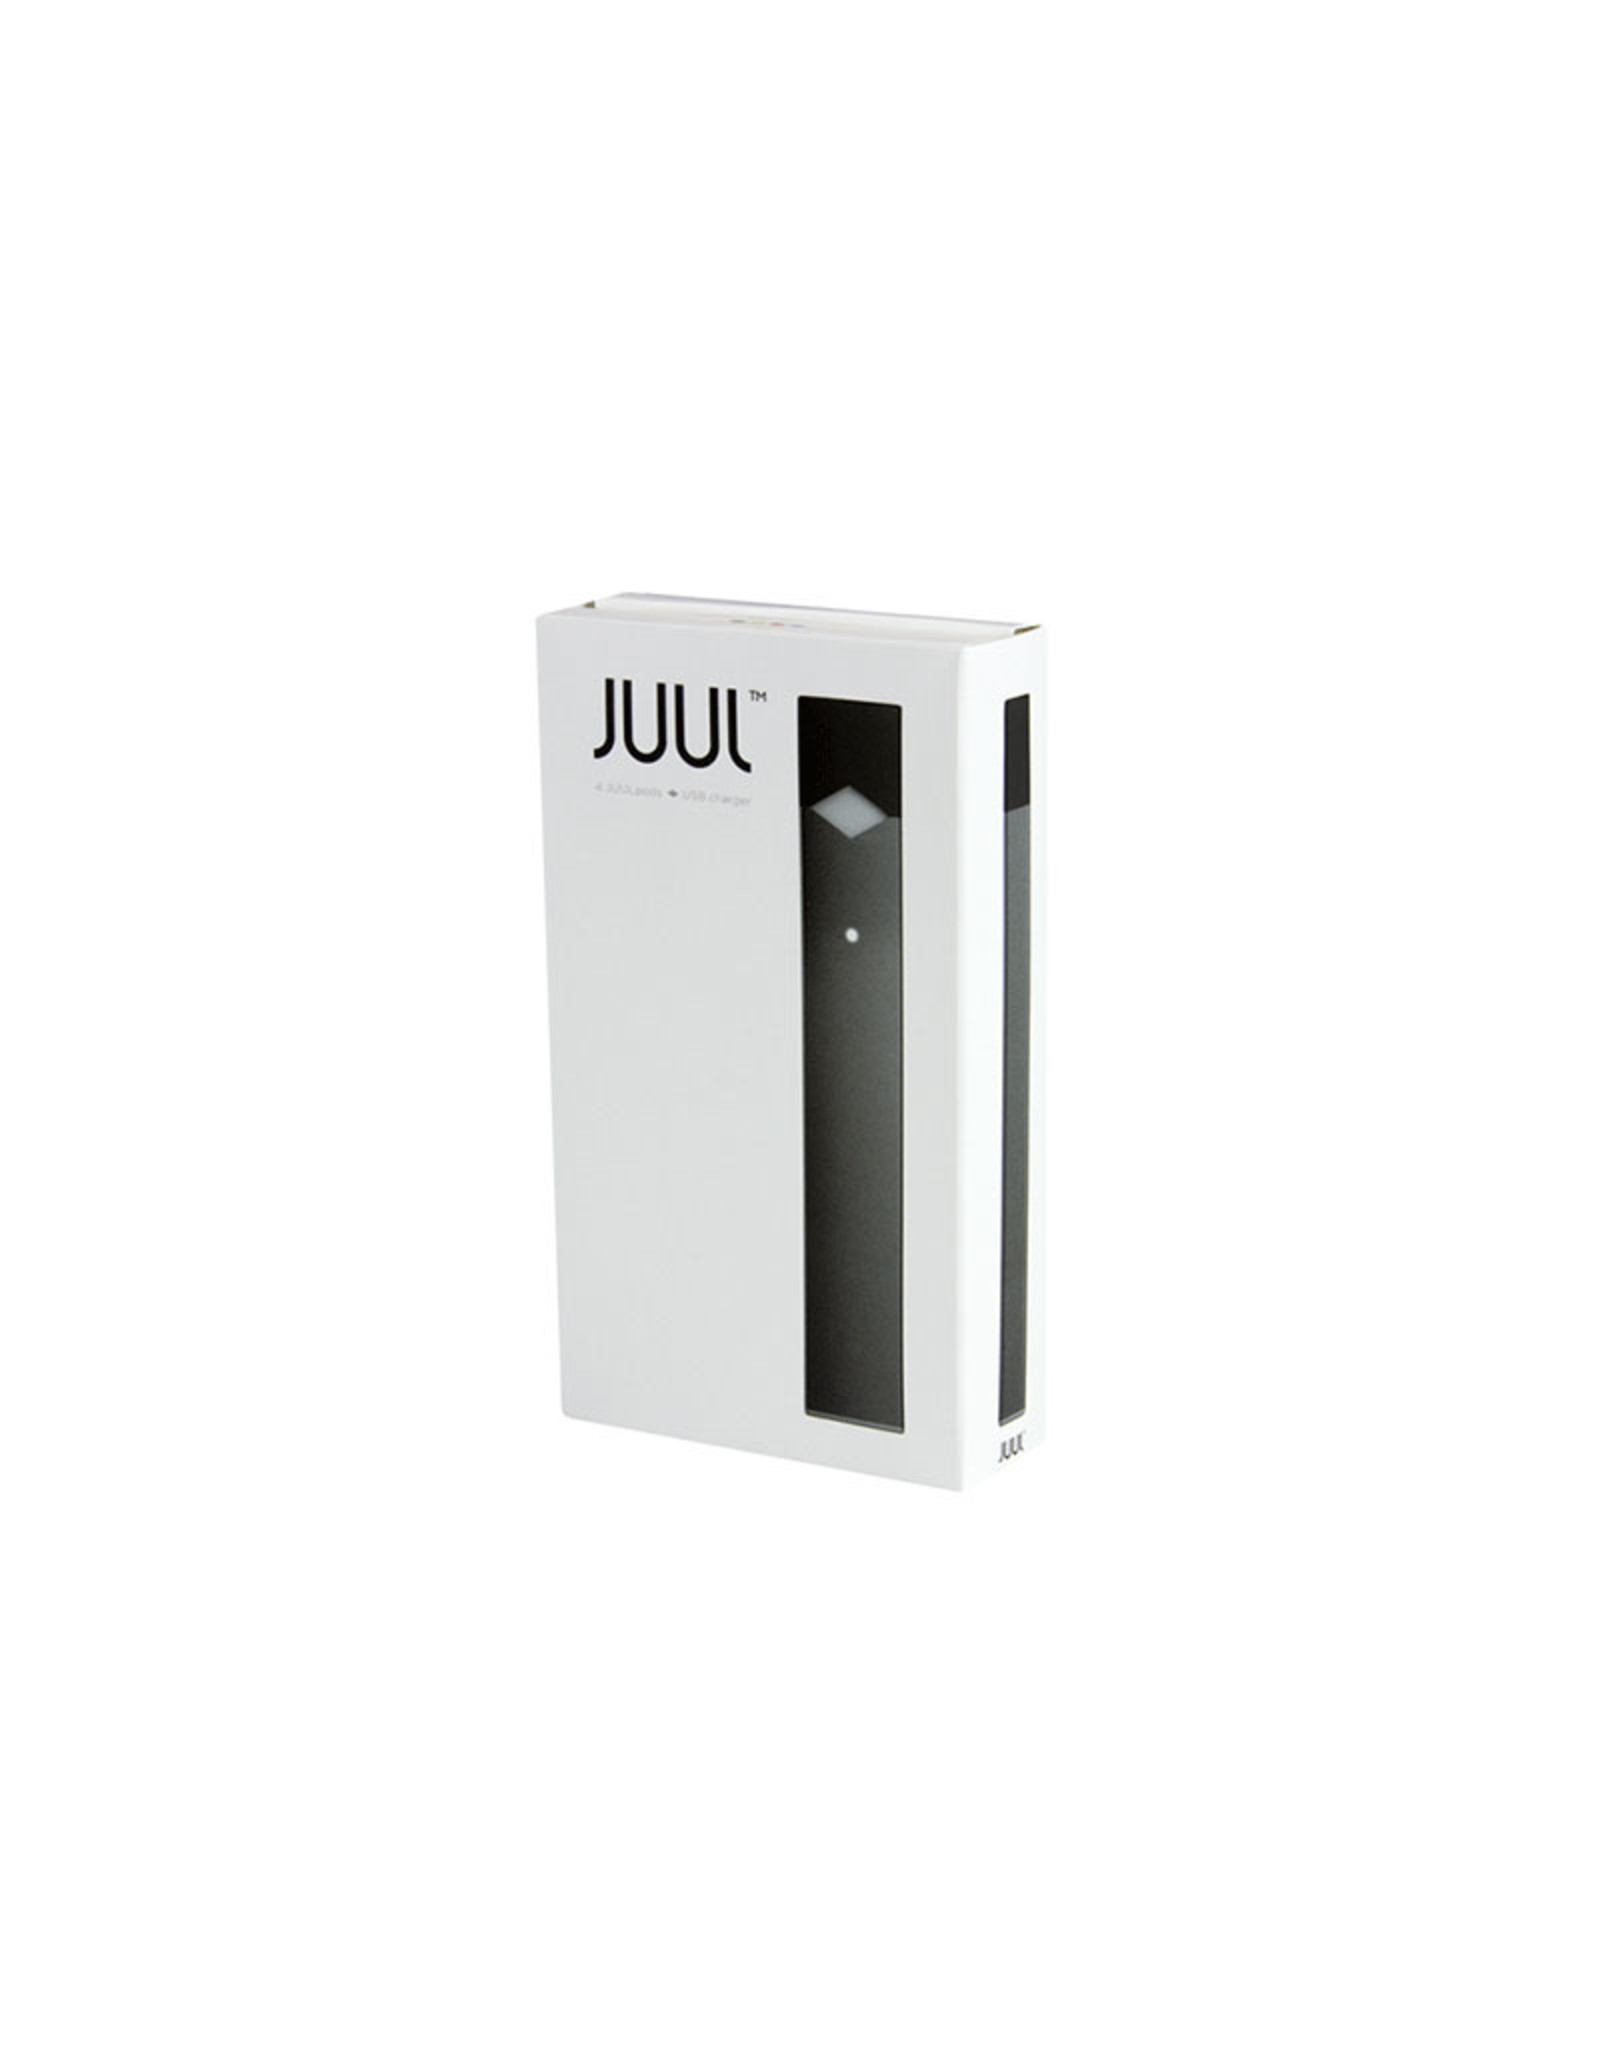 JUUL JUUL Device - Black